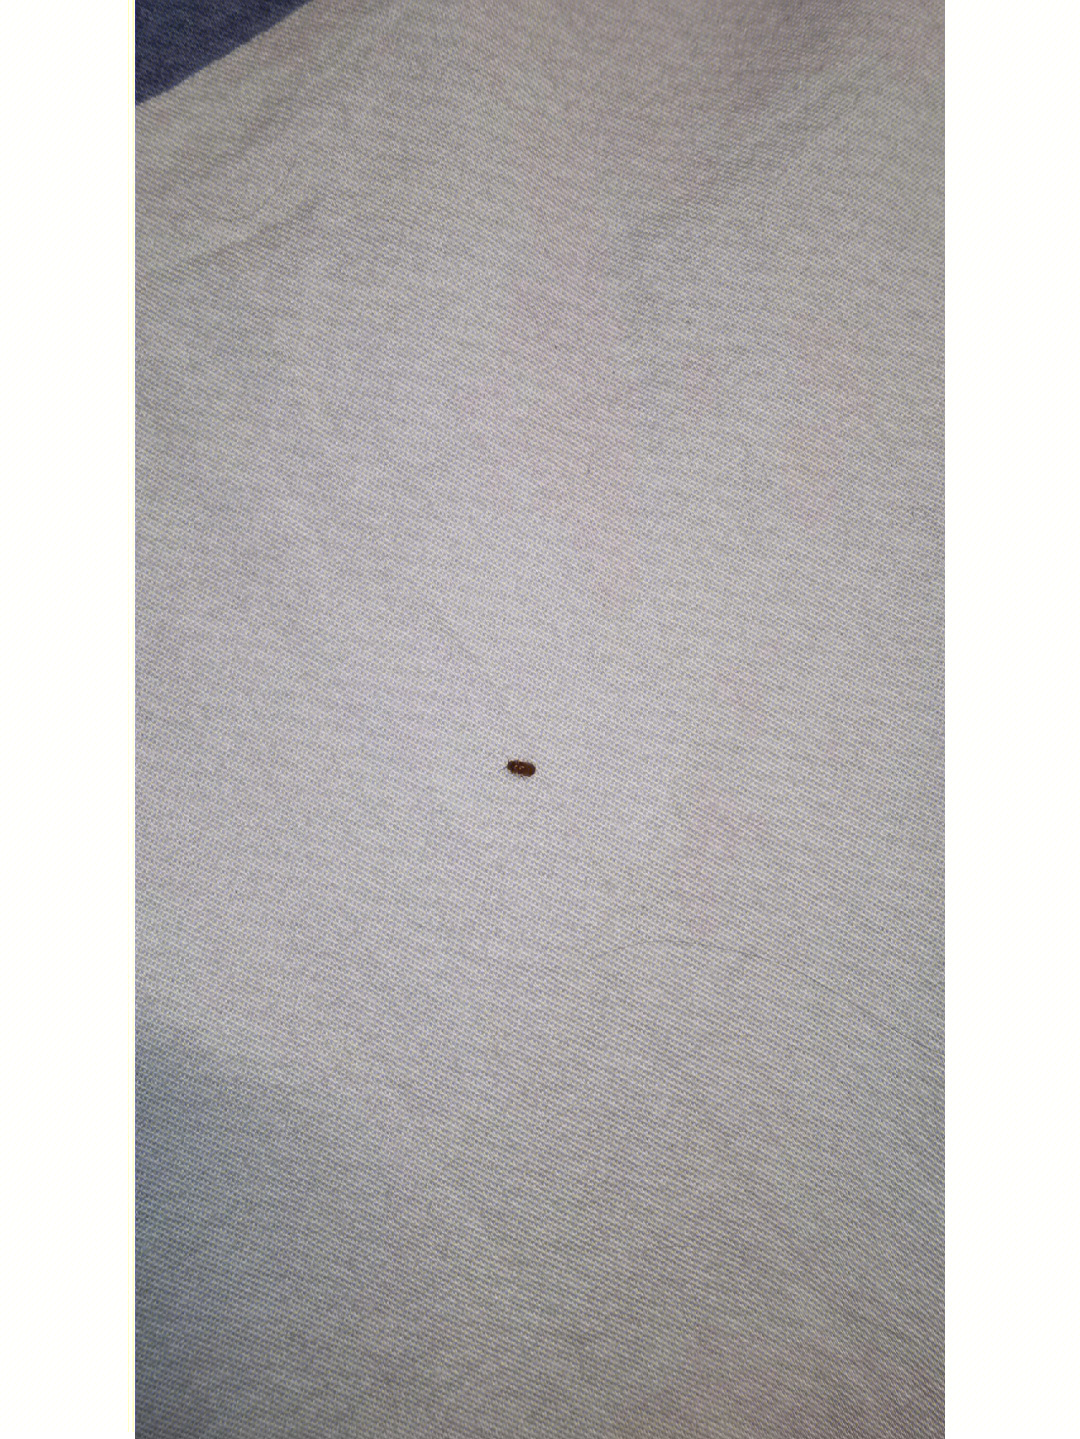 床上发现虫子#床上小虫子 集美们 这是目前发现的最小的 连续一周